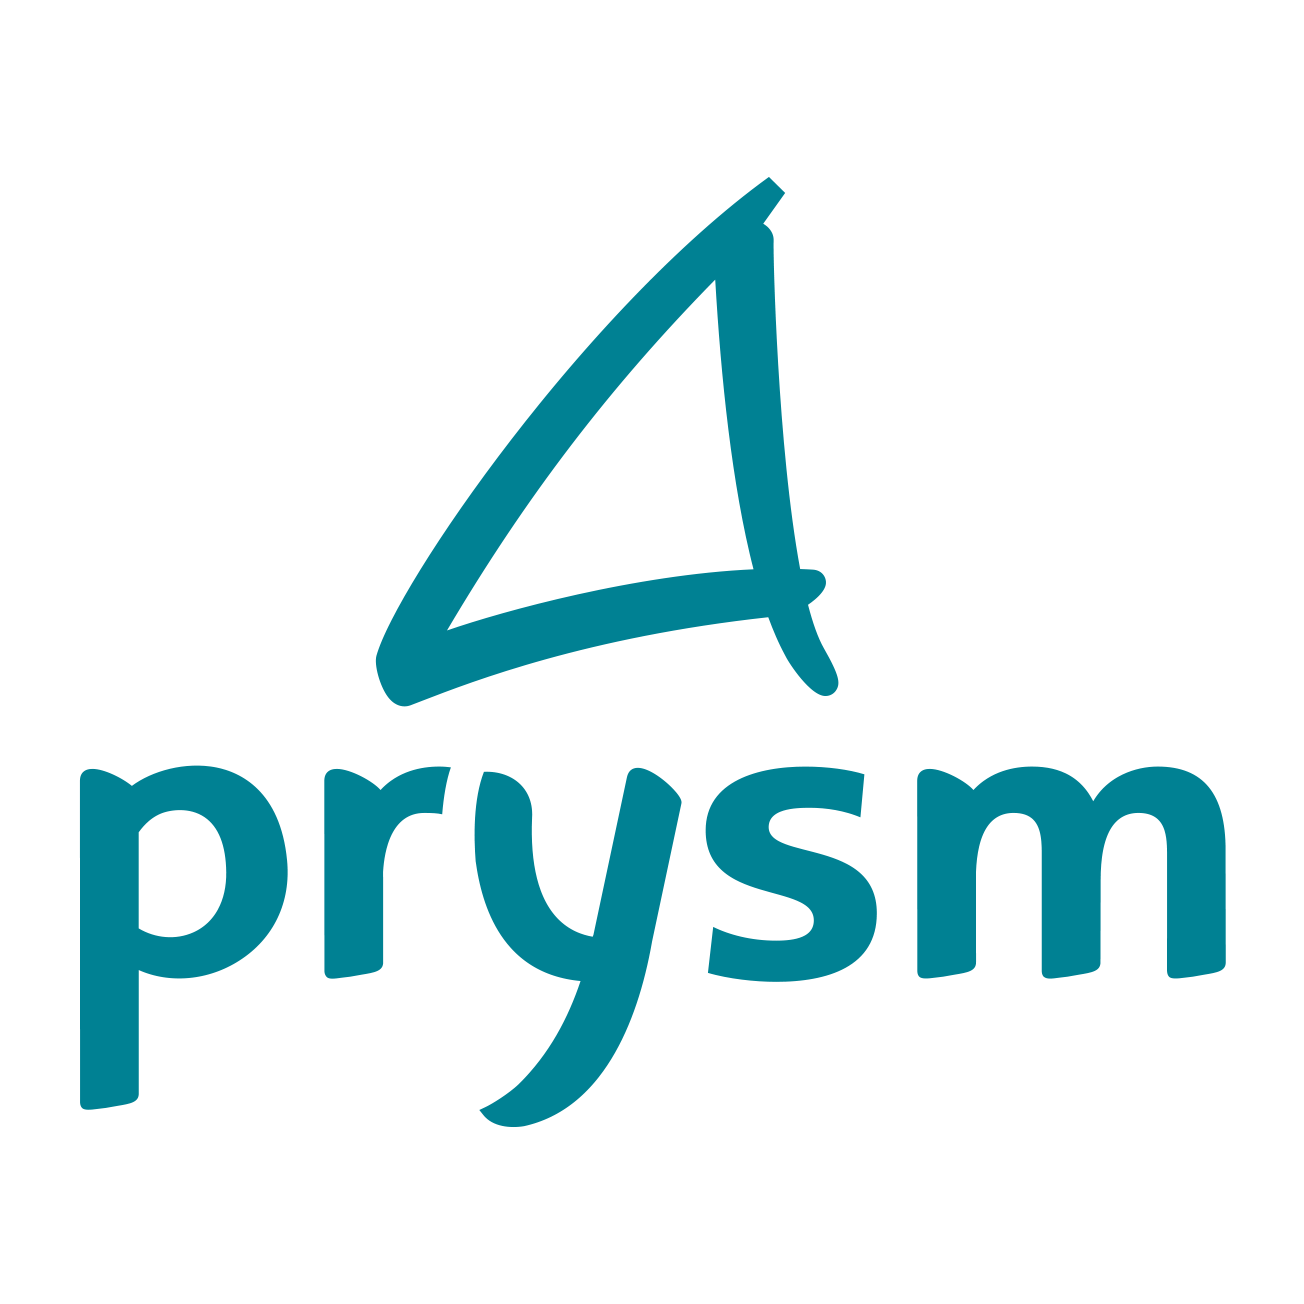 Logo-PRYSM-CC-Software